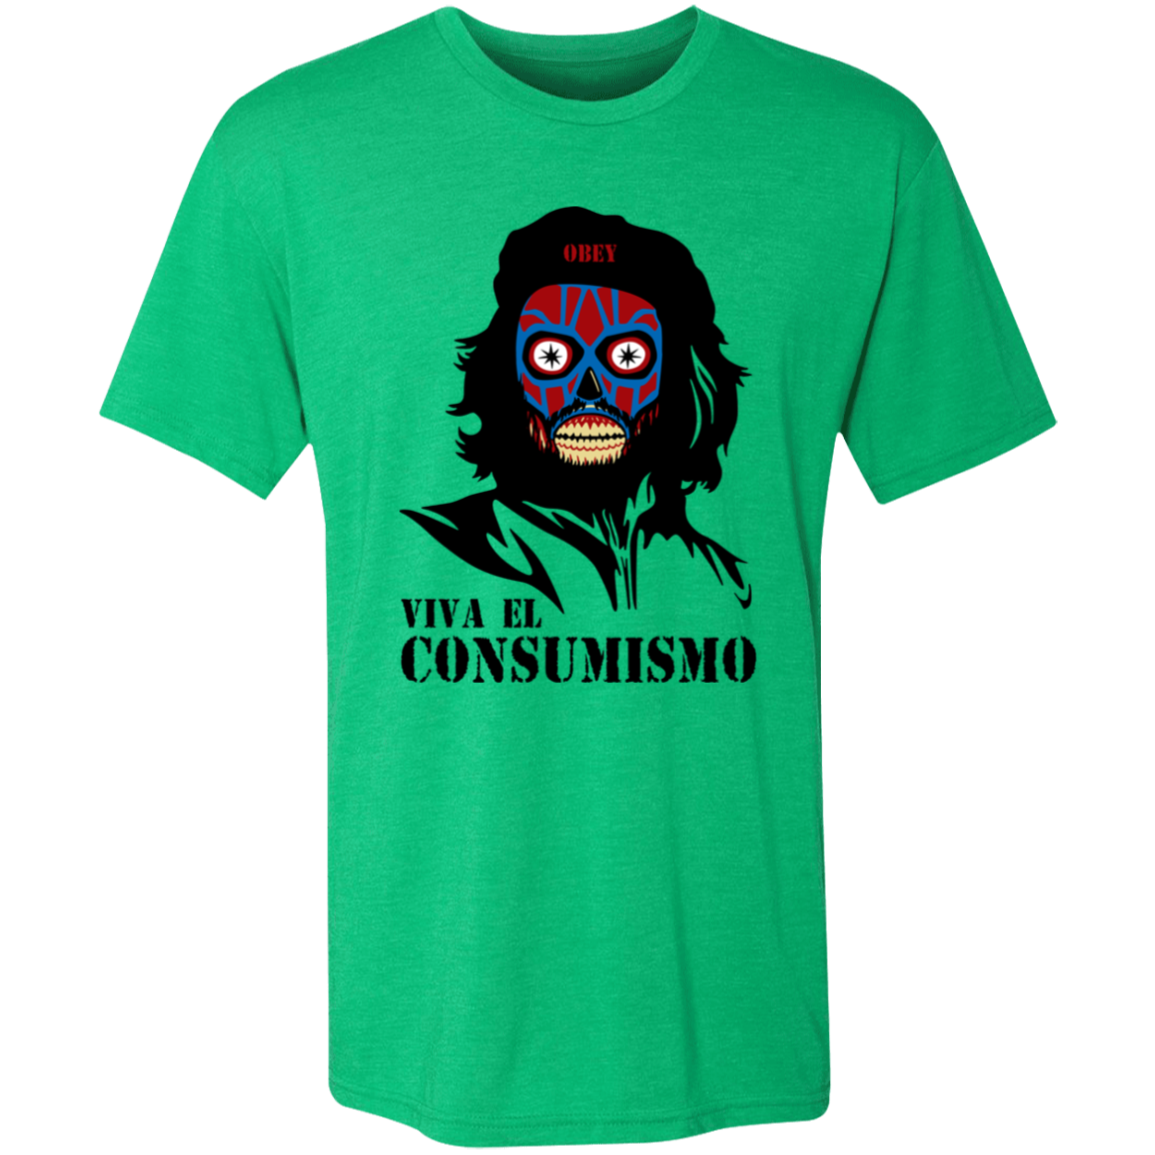 Viva el Consumismo Men's Triblend T-Shirt